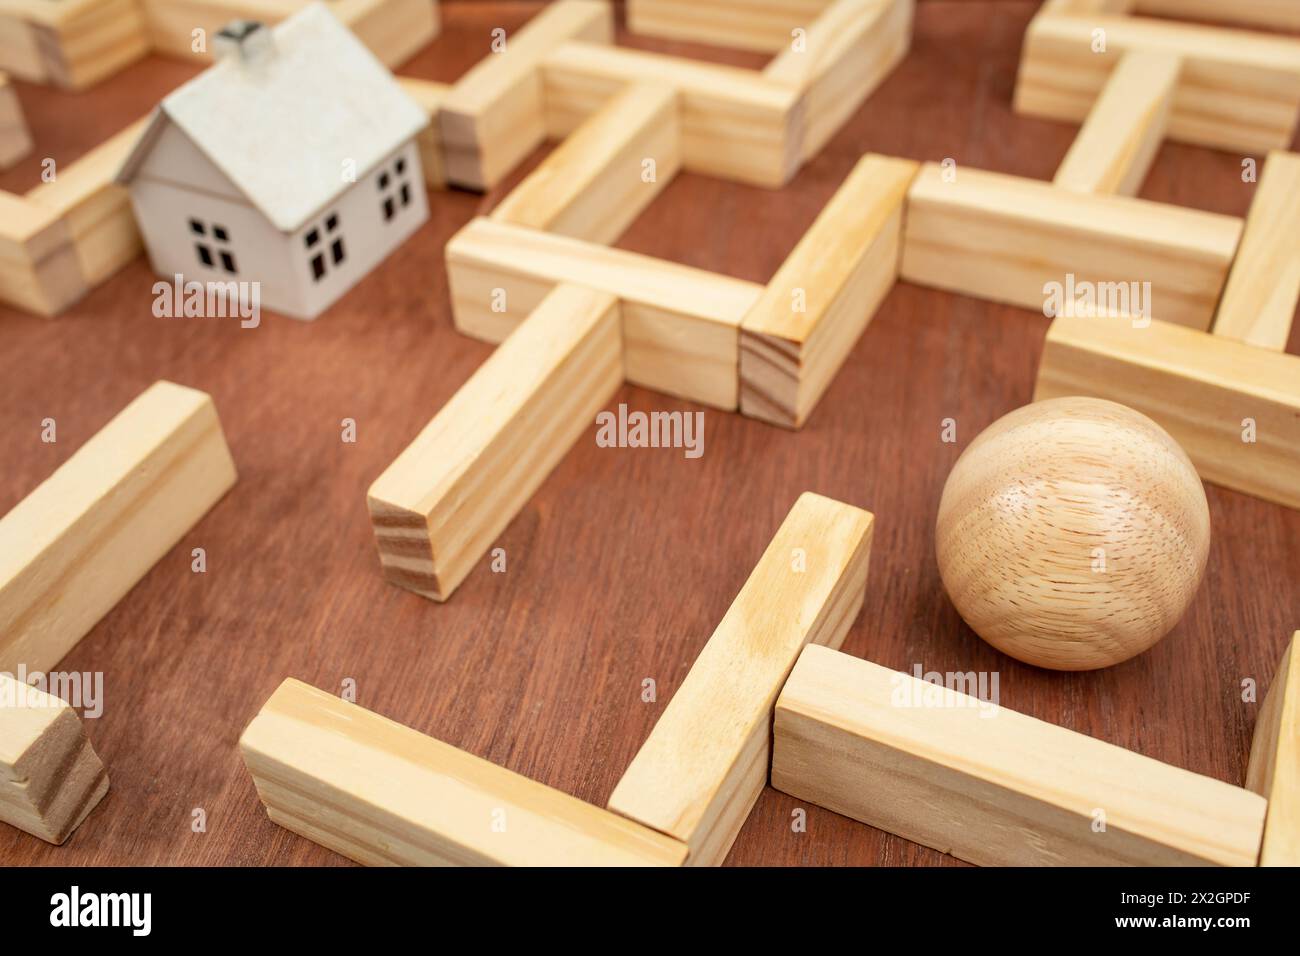 Maison blanche miniature dans un labyrinthe en bois, labyrinthe en bois fait avec des blocs de bois et une sphère de bois trouvant labyrinthe concept de sortie, soft focus close up Banque D'Images